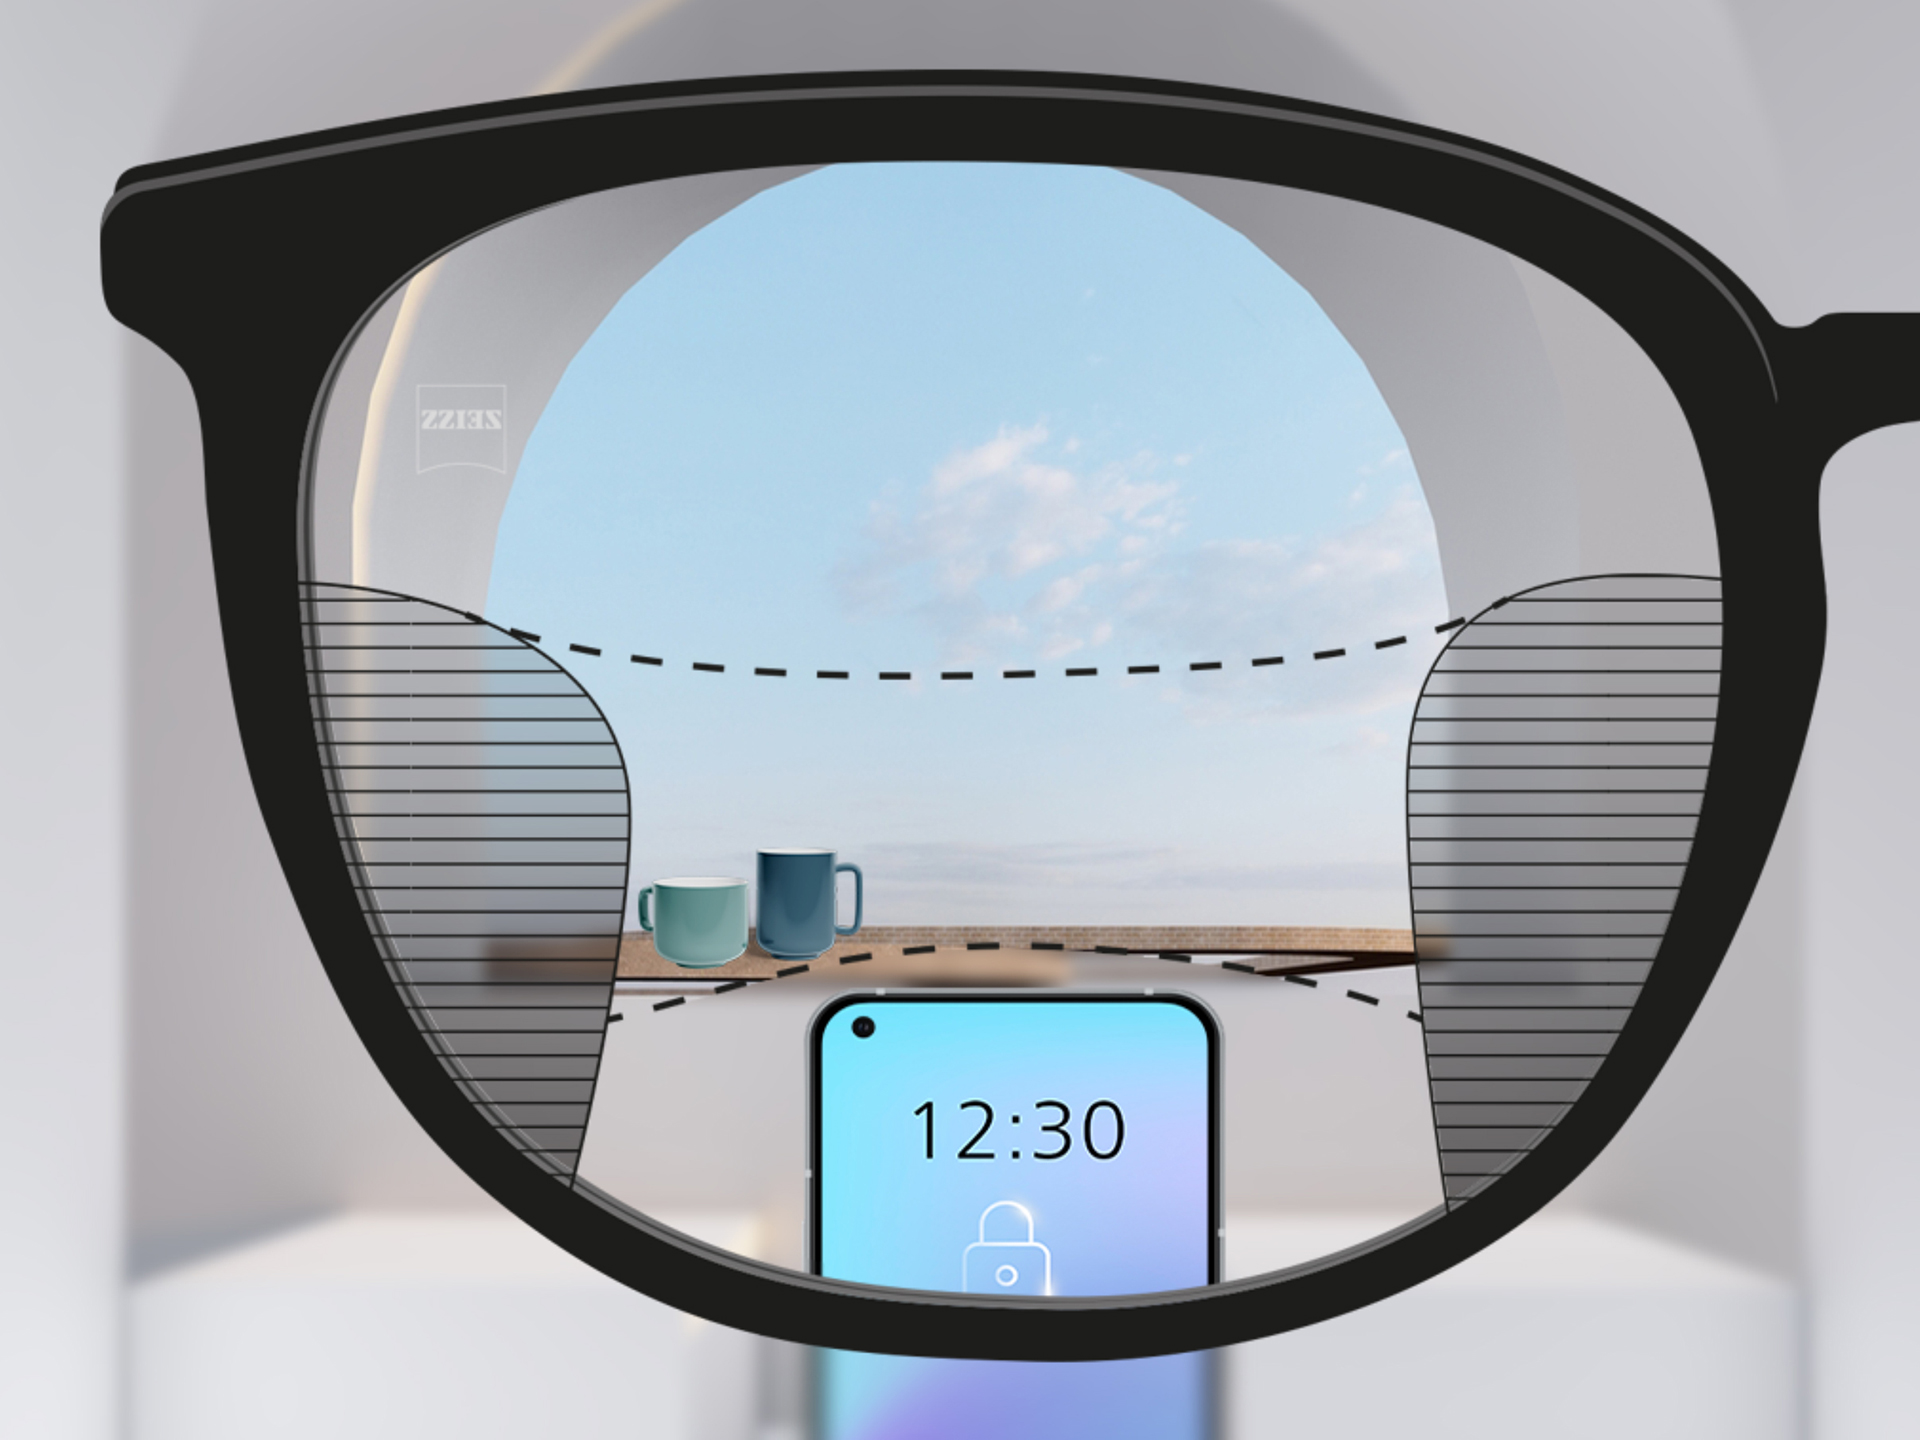 Abbildung mit Blick durch ein ZEISS SmartLife Gleitsichtglas: Die unscharfen Zonen im linken und rechten Teil des Brillenglases sind klein, wodurch es große Zonen mit klarer Sicht gibt.